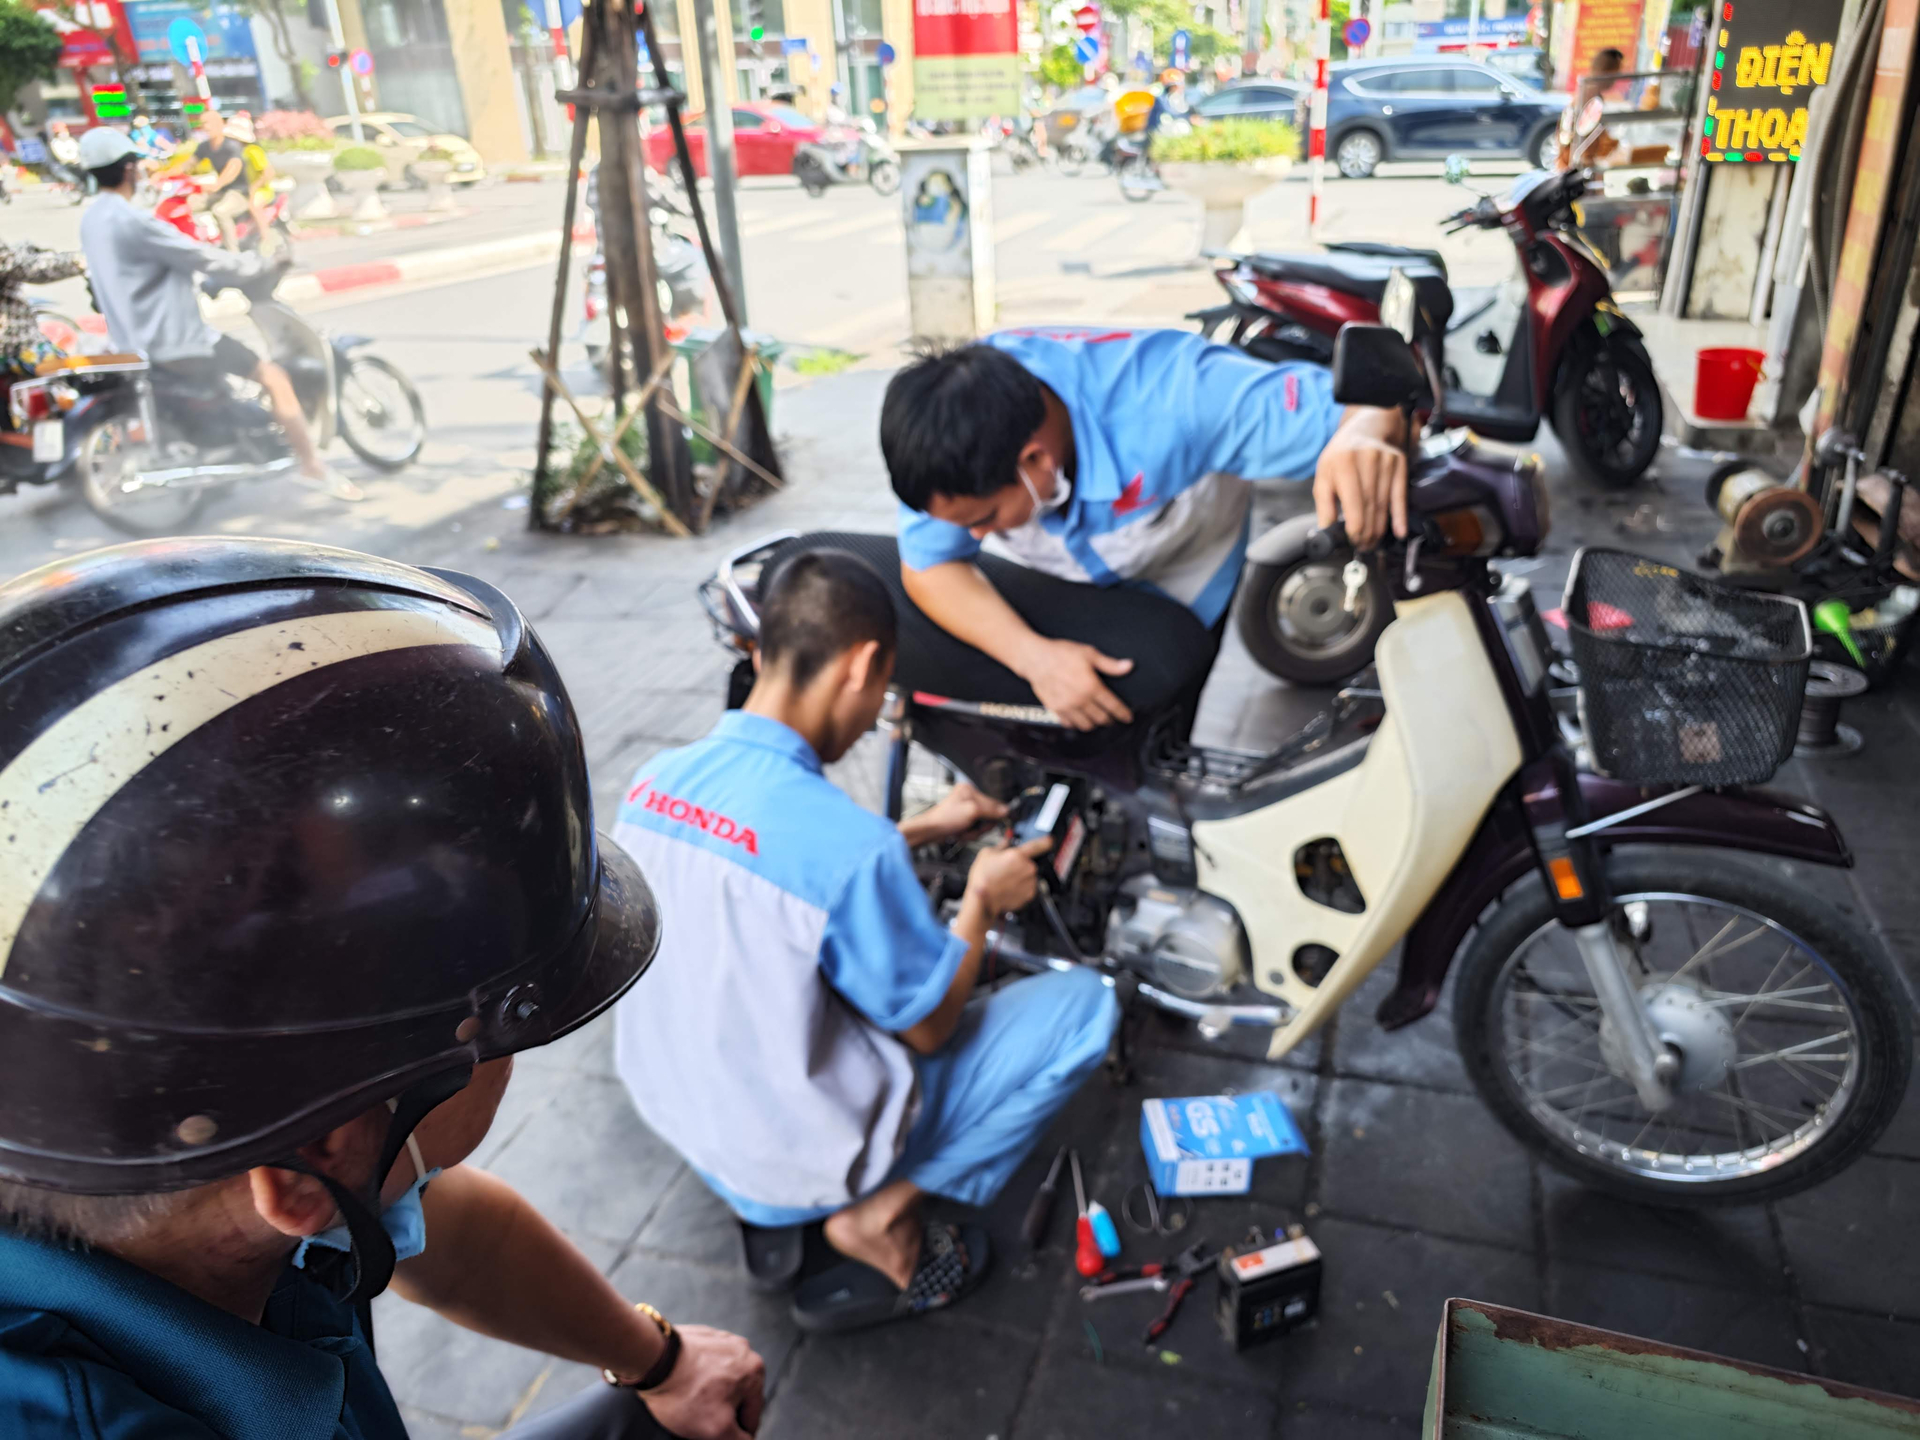 Không ít người đi xe máy ở Hà Nội bức xúc trước hiện tượng ngày một phổ biến là 'chặt chém' giá sửa chữa xe. Ảnh minh họa khách hàng ngồi chờ tại 1 tiệm sửa xe trên địa bàn quận Hoàng Mai.